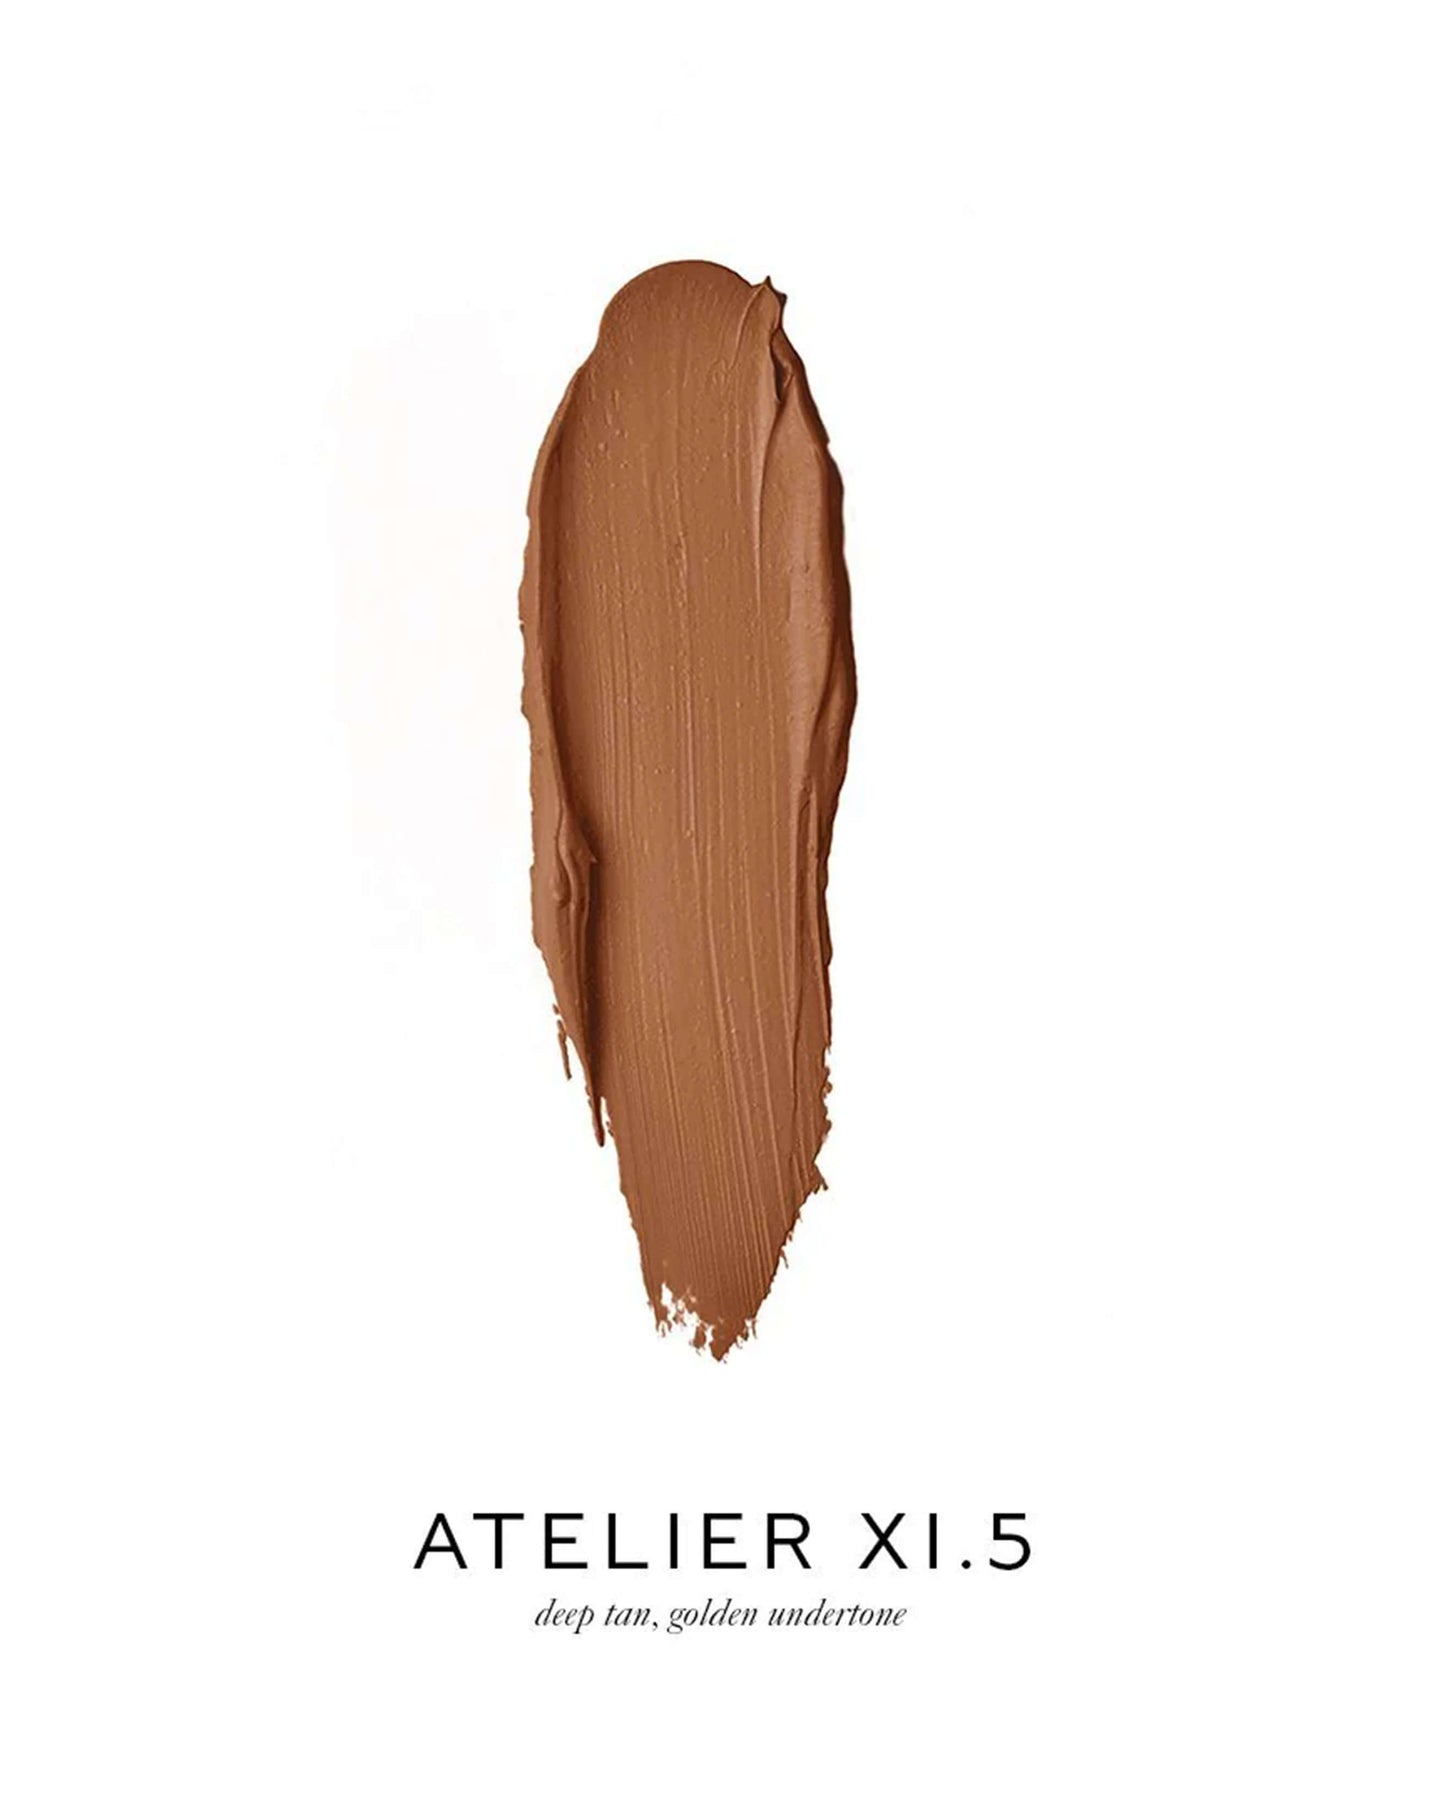 Atelier XI.5 (deep tan, golden undertone)